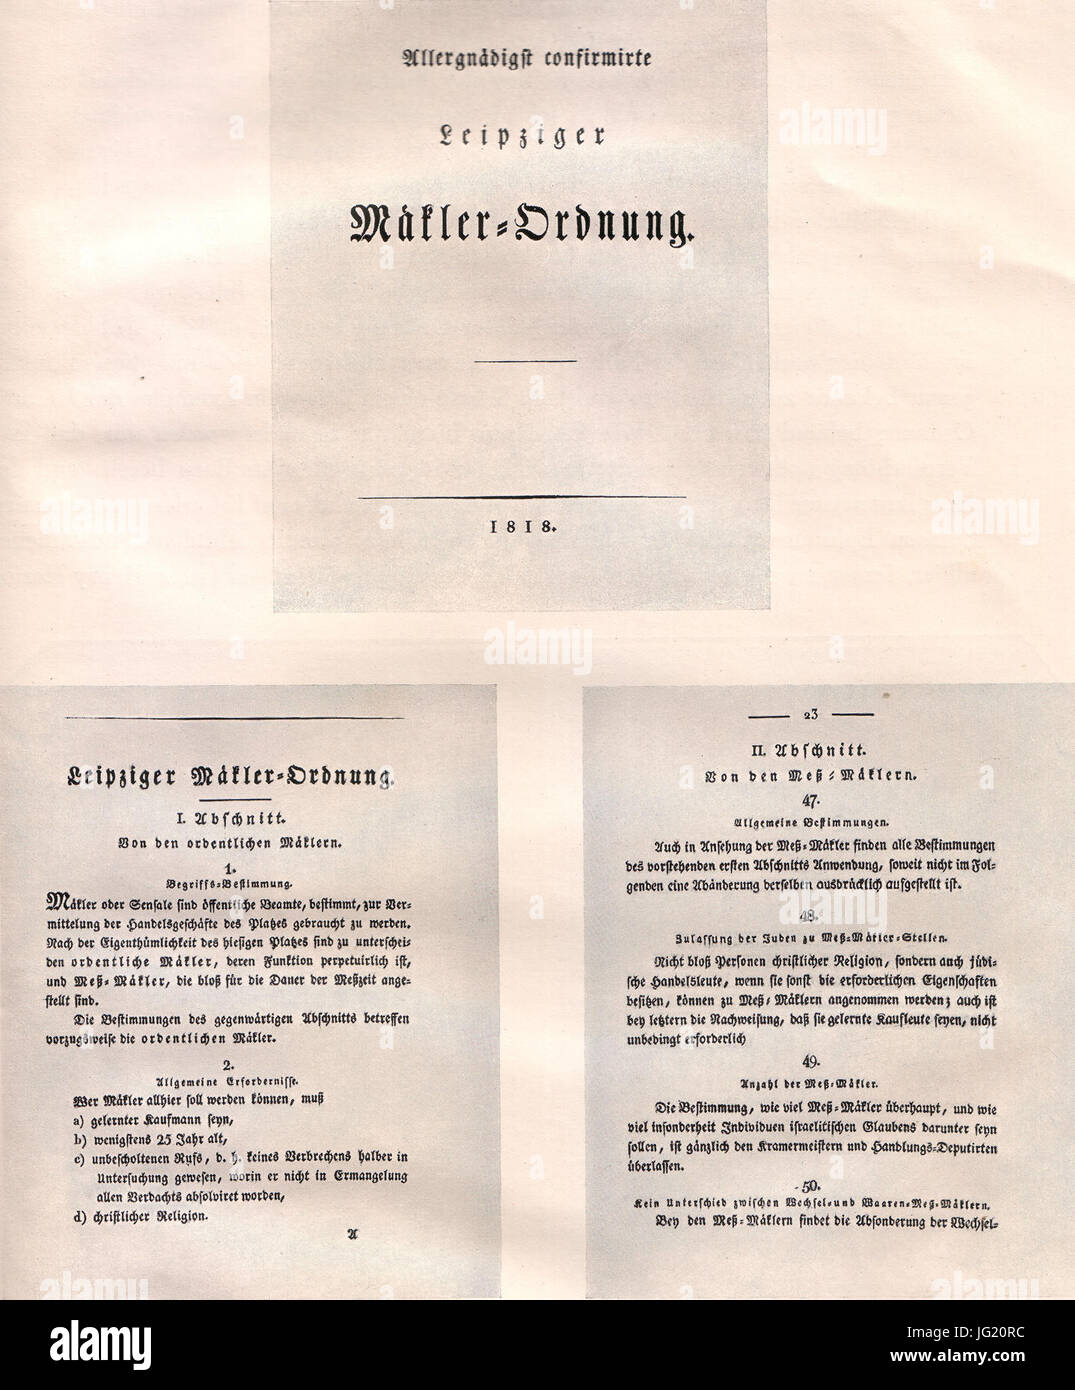 Hundert Jahre Marcus Harmelin 1830-1930 (Seite 11, Leipziger Mäkler-Ordnung von 1818) Stock Photo